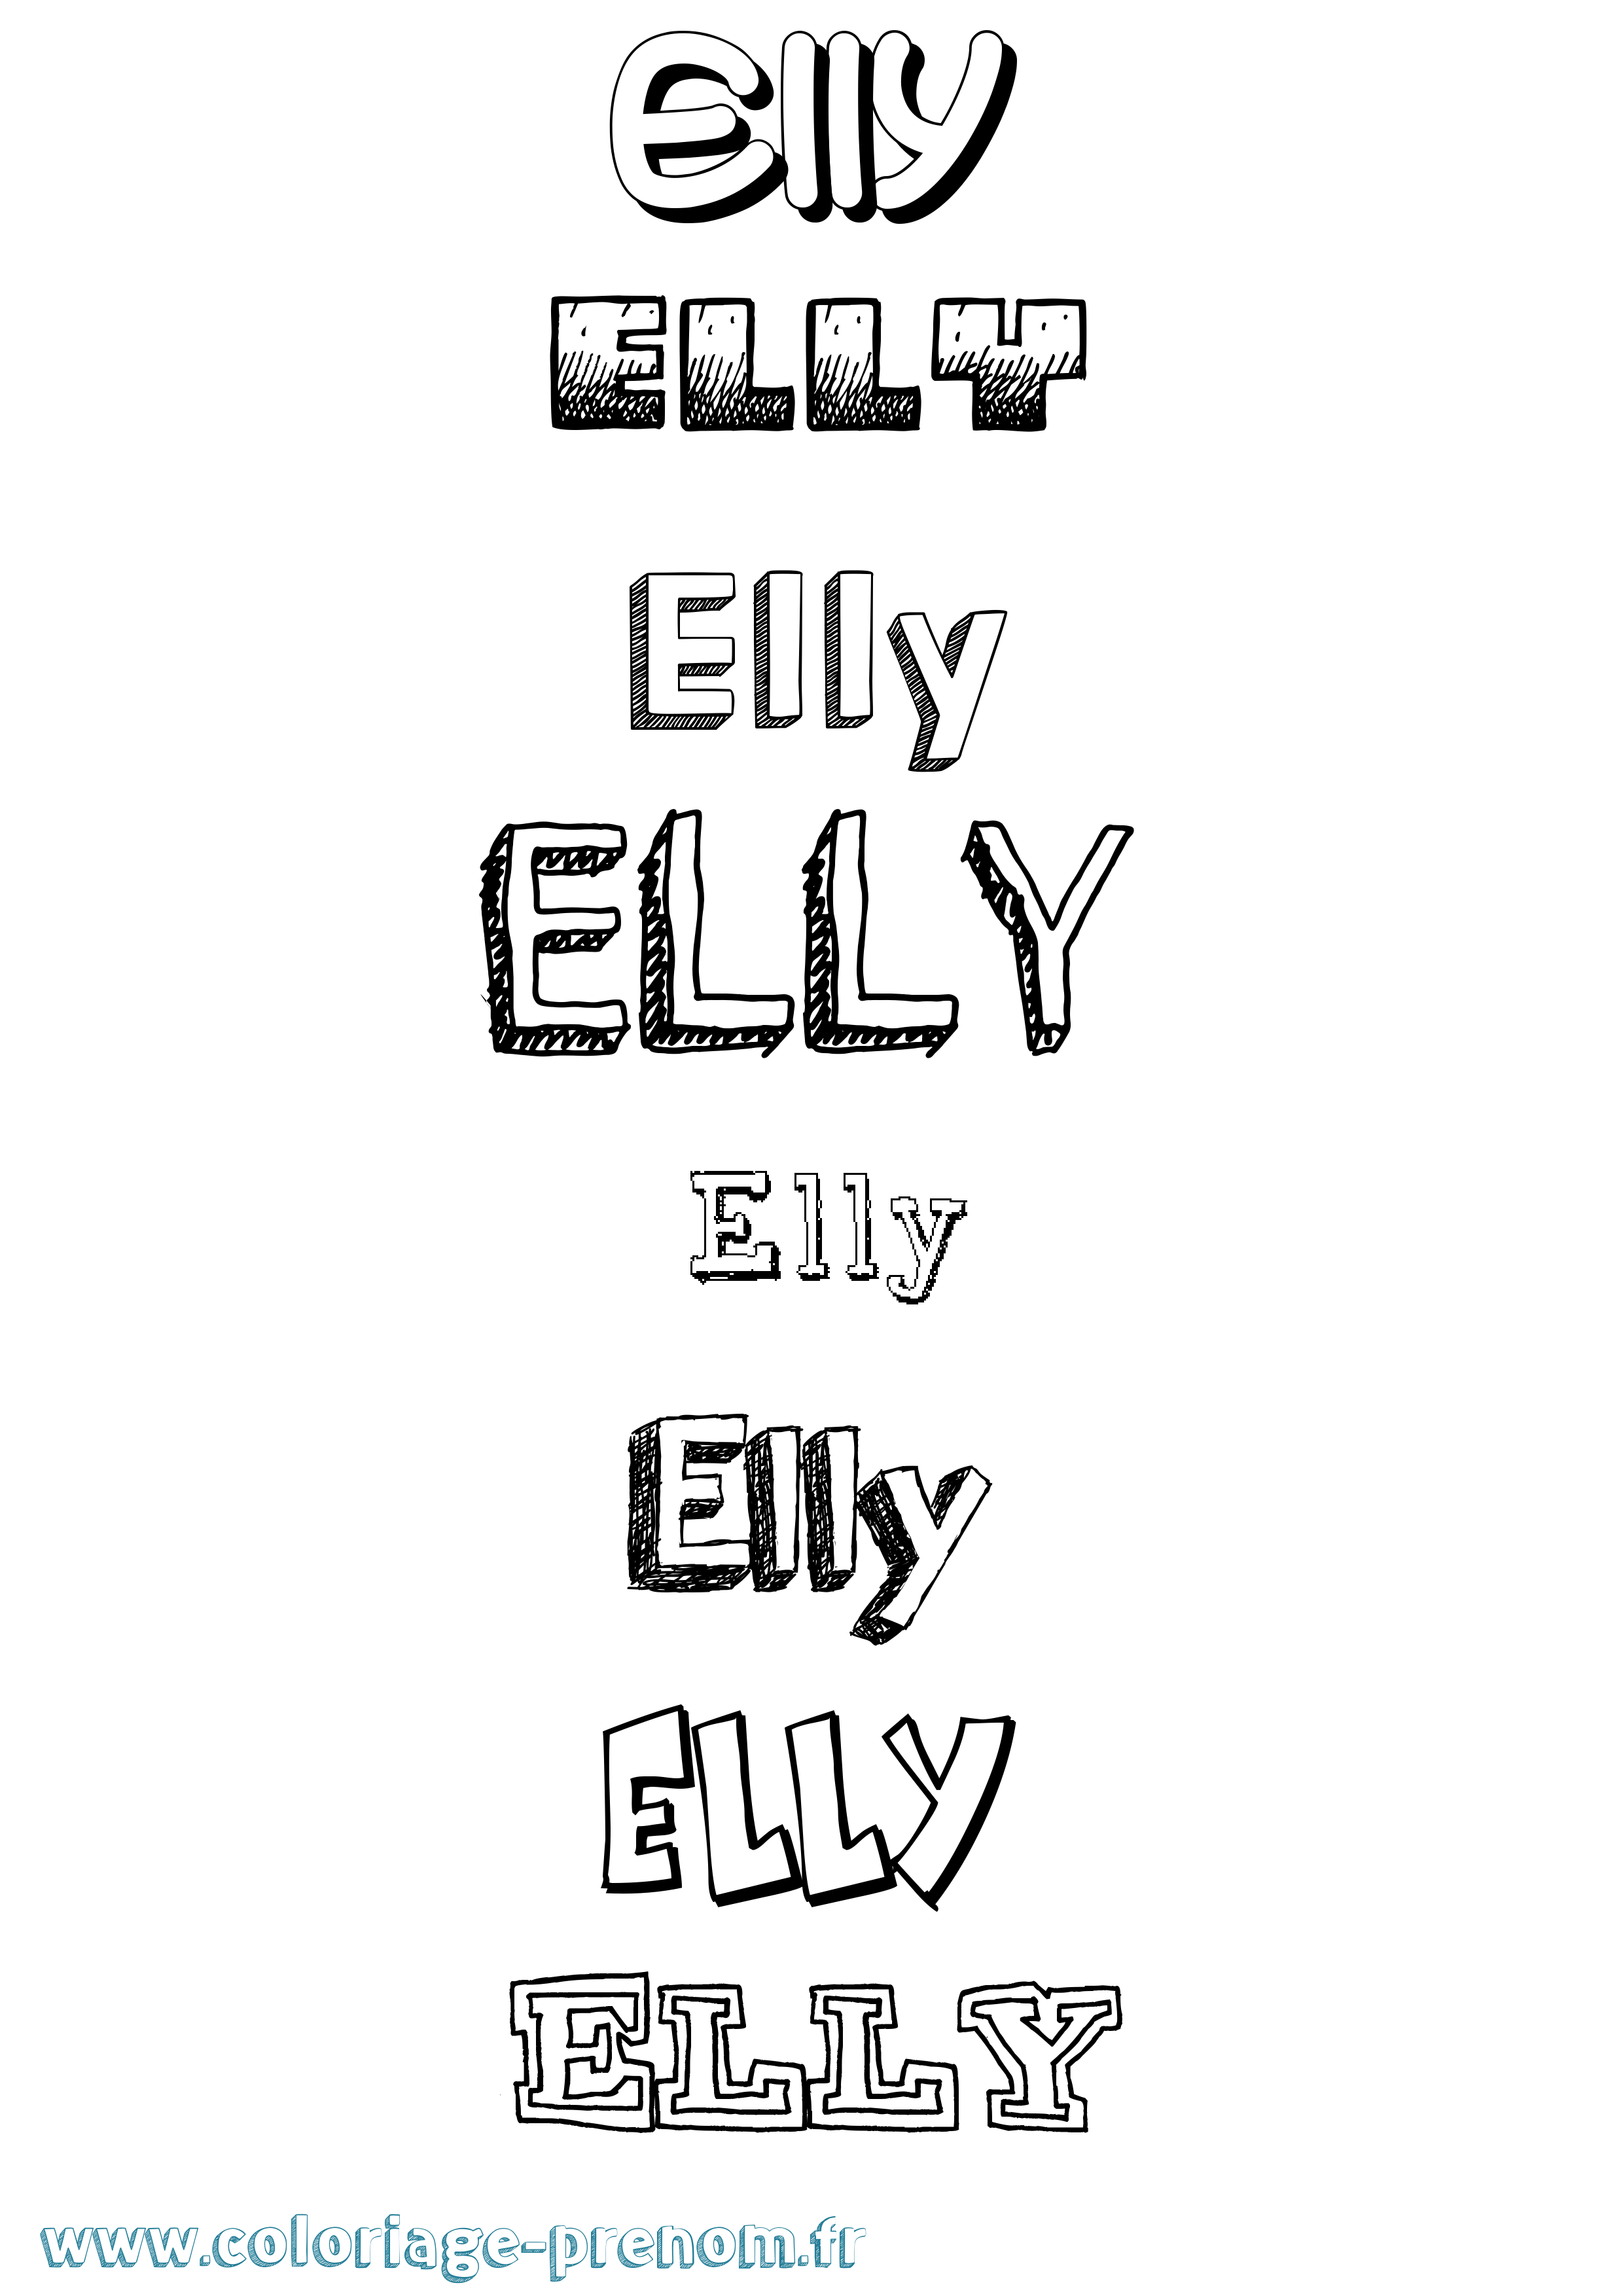 Coloriage prénom Elly Dessiné